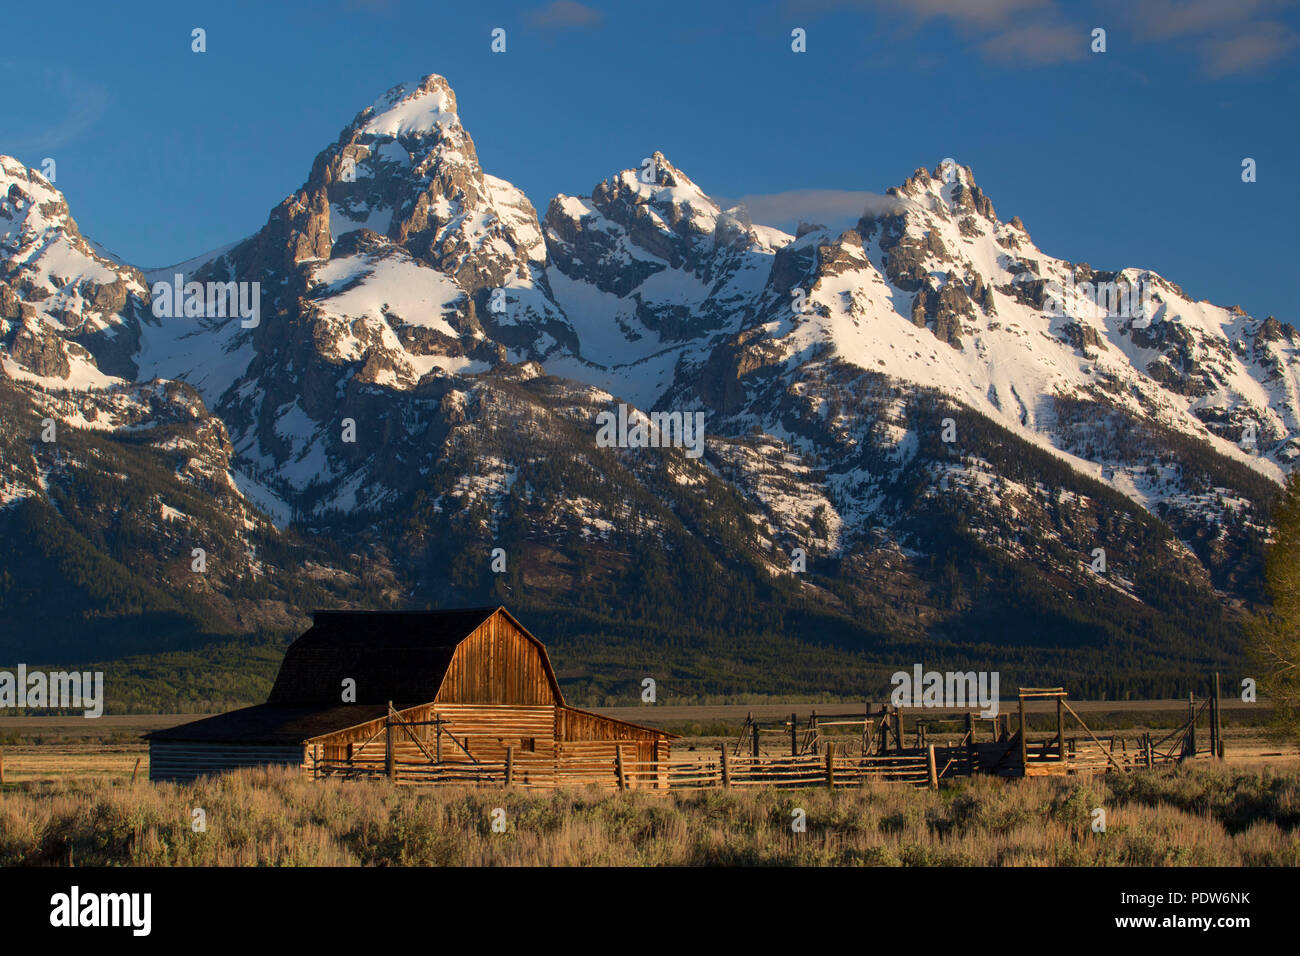 Mormon Zeile Scheune mit Grand Teton Bergkette, Grand Teton National Park, Wyoming Stockfoto